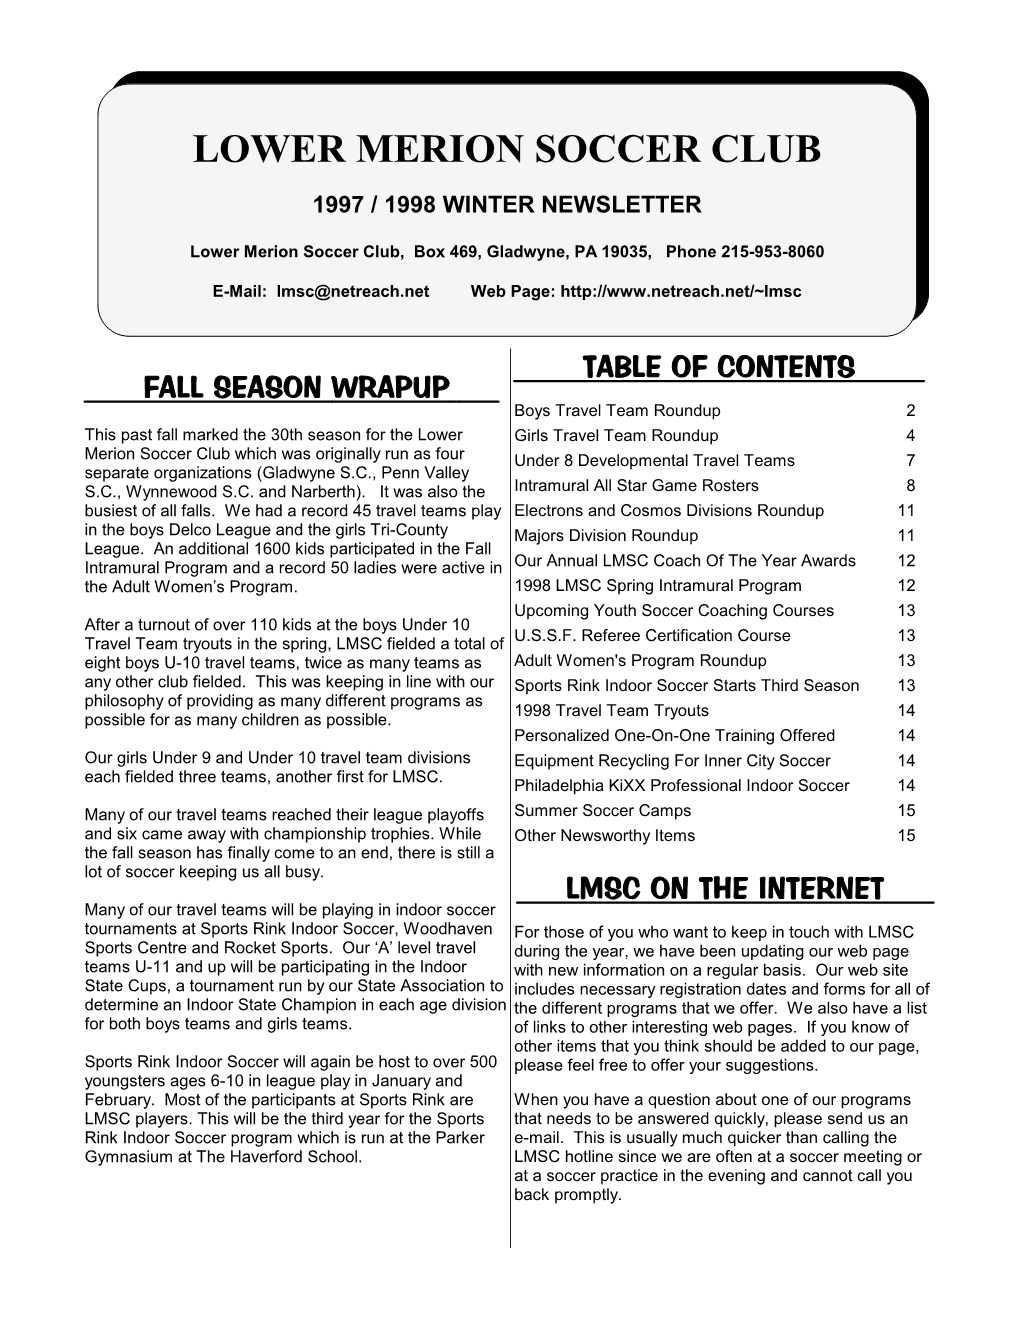 1997 / 1998 Winter Newsletter